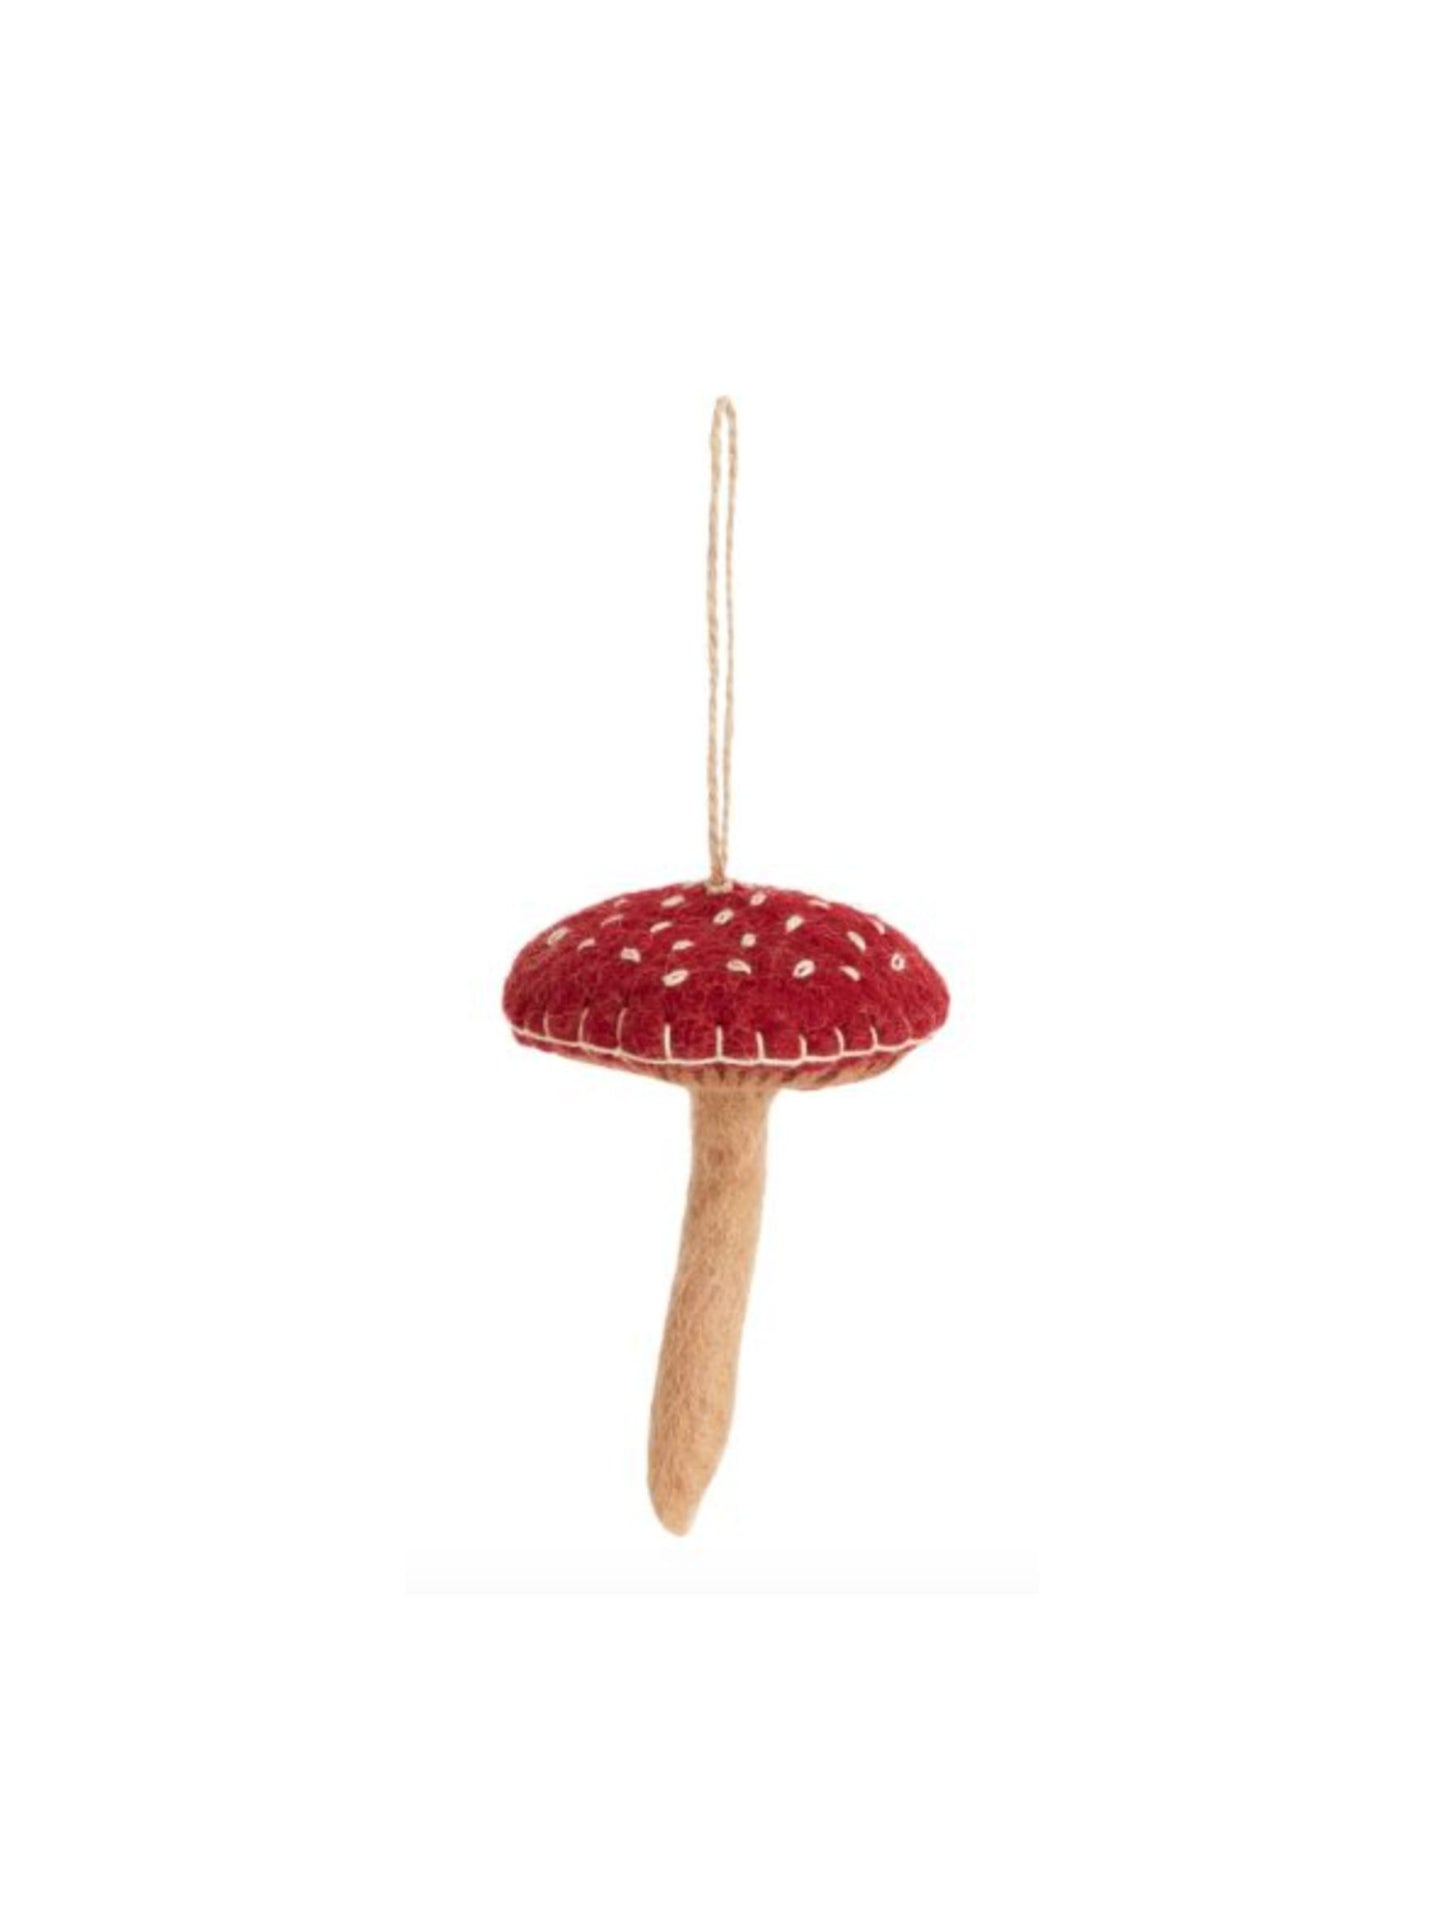 Felt Fungi Ornament- Natural